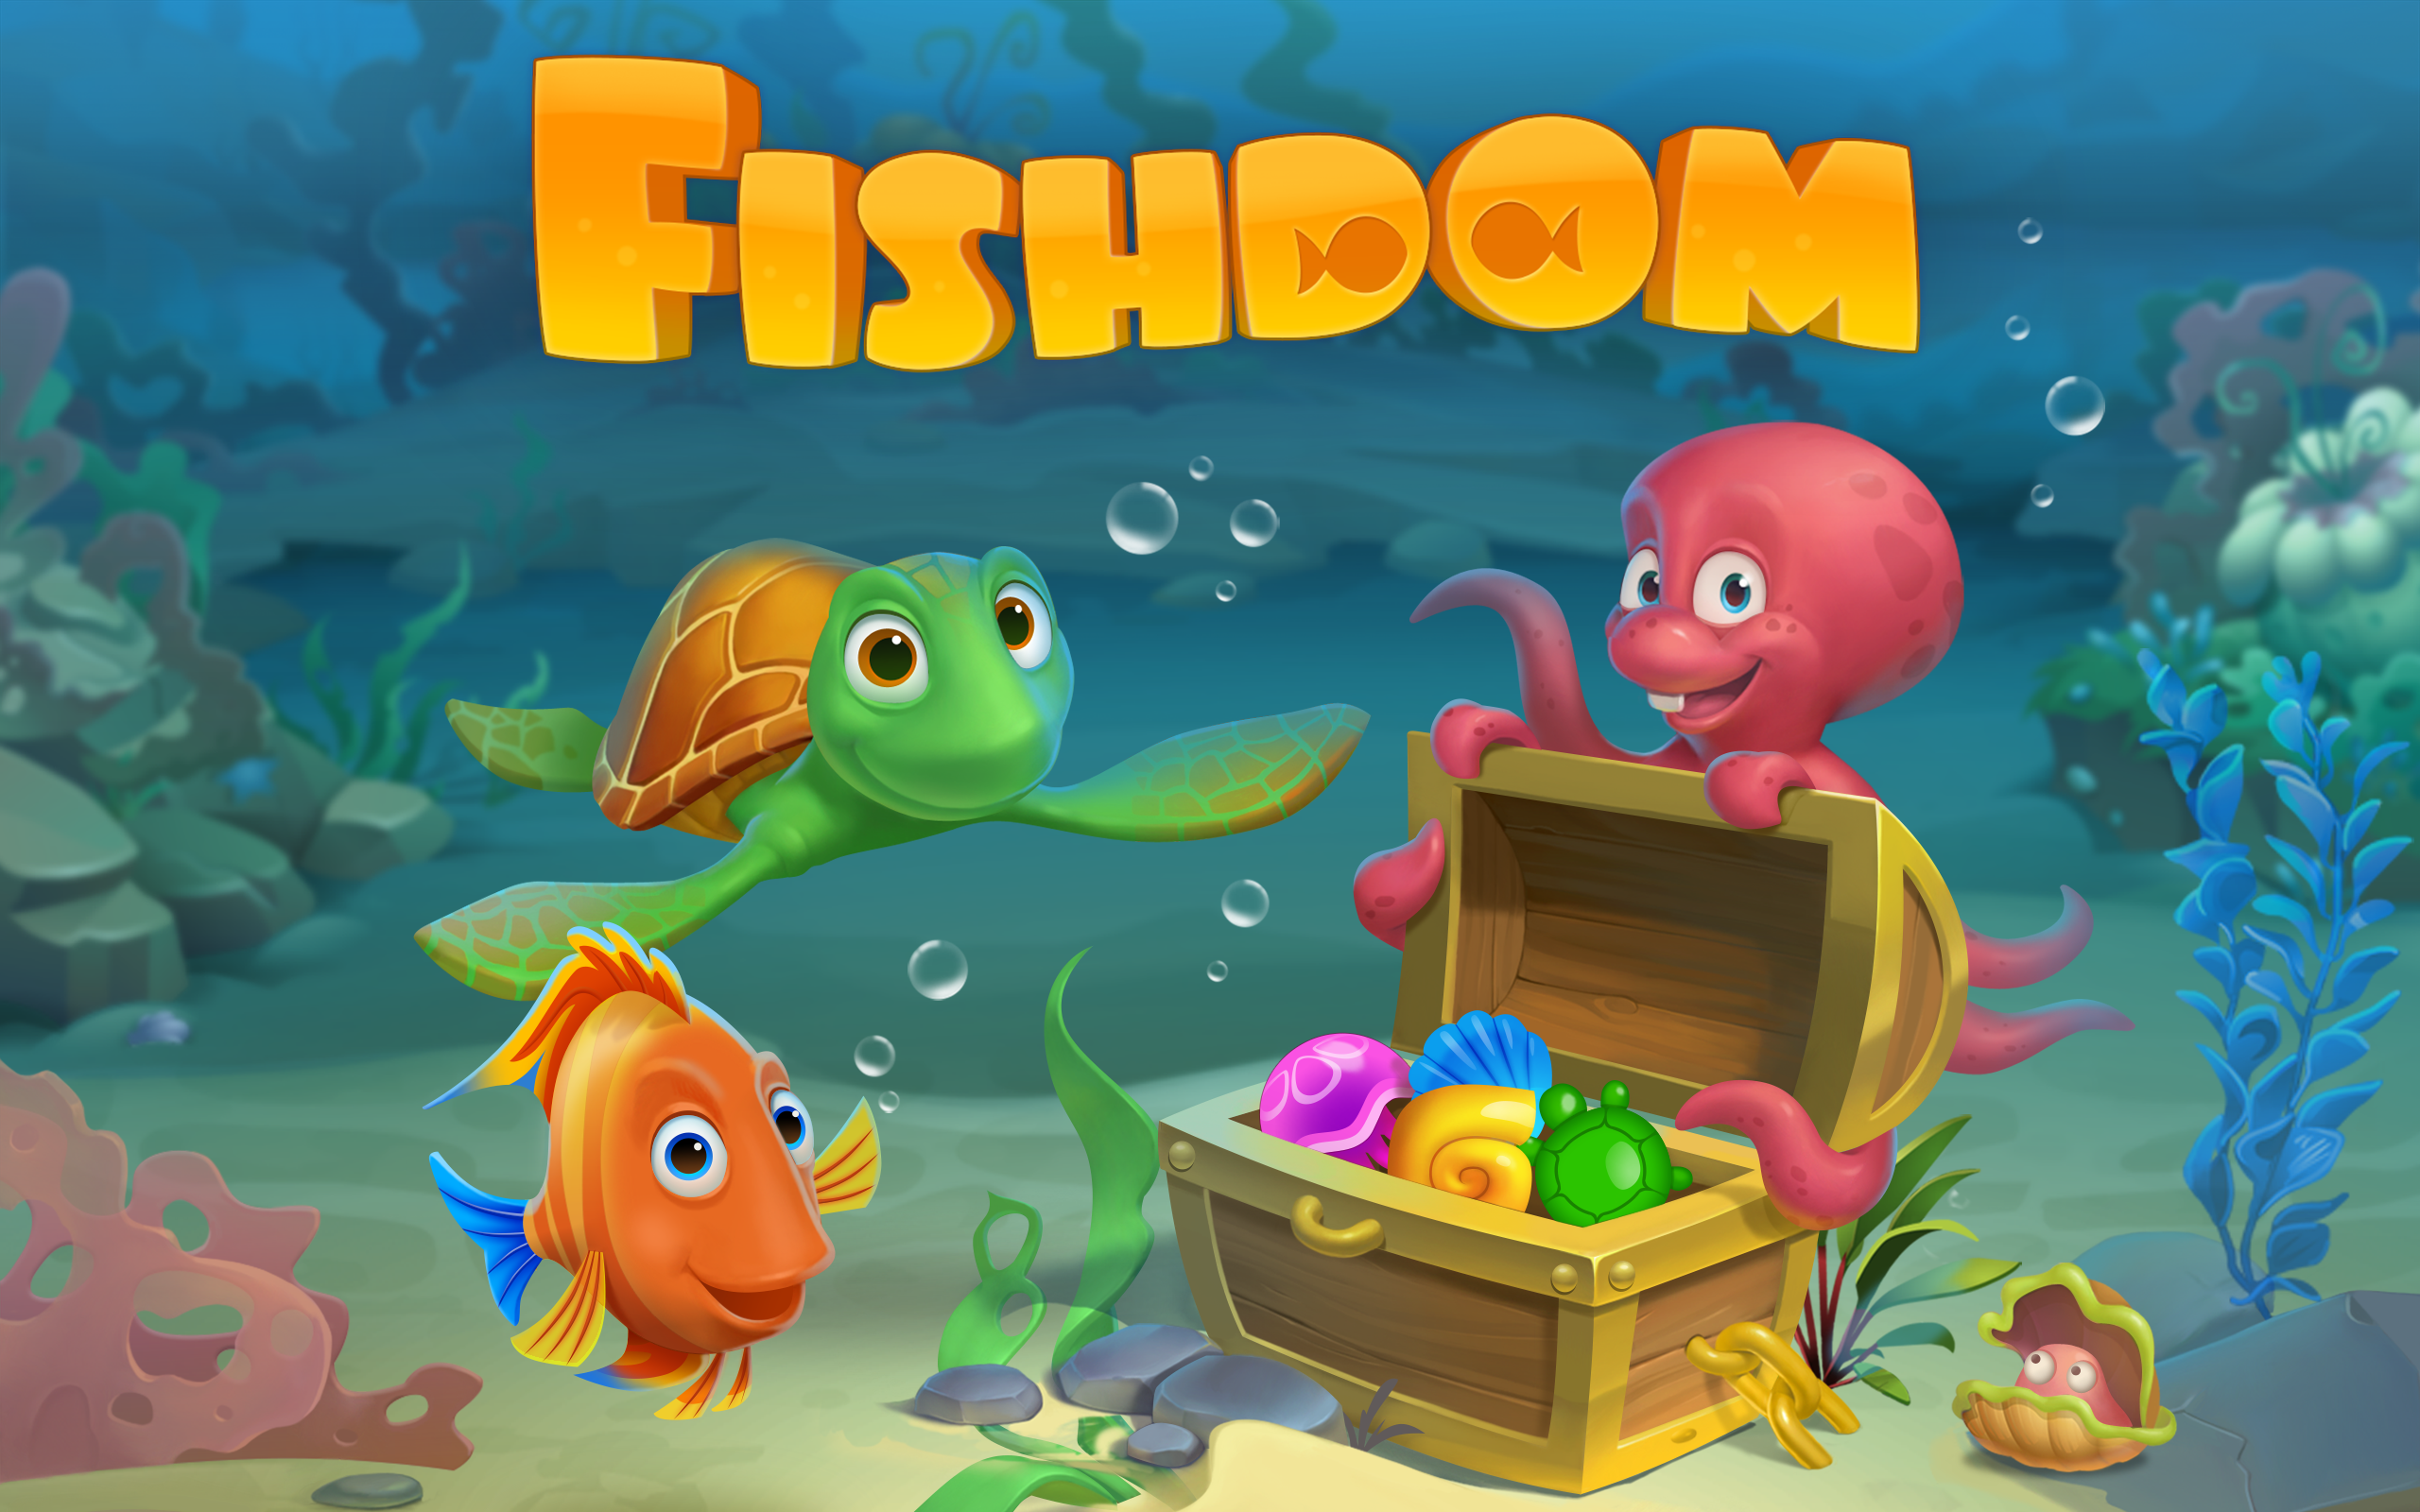 Играть рыбу 1. Аквариум из игры Fishdom. Игра рыбки в аквариуме Fishdom. Игра Fishdom 2. Игра плейрикс Fishdom.